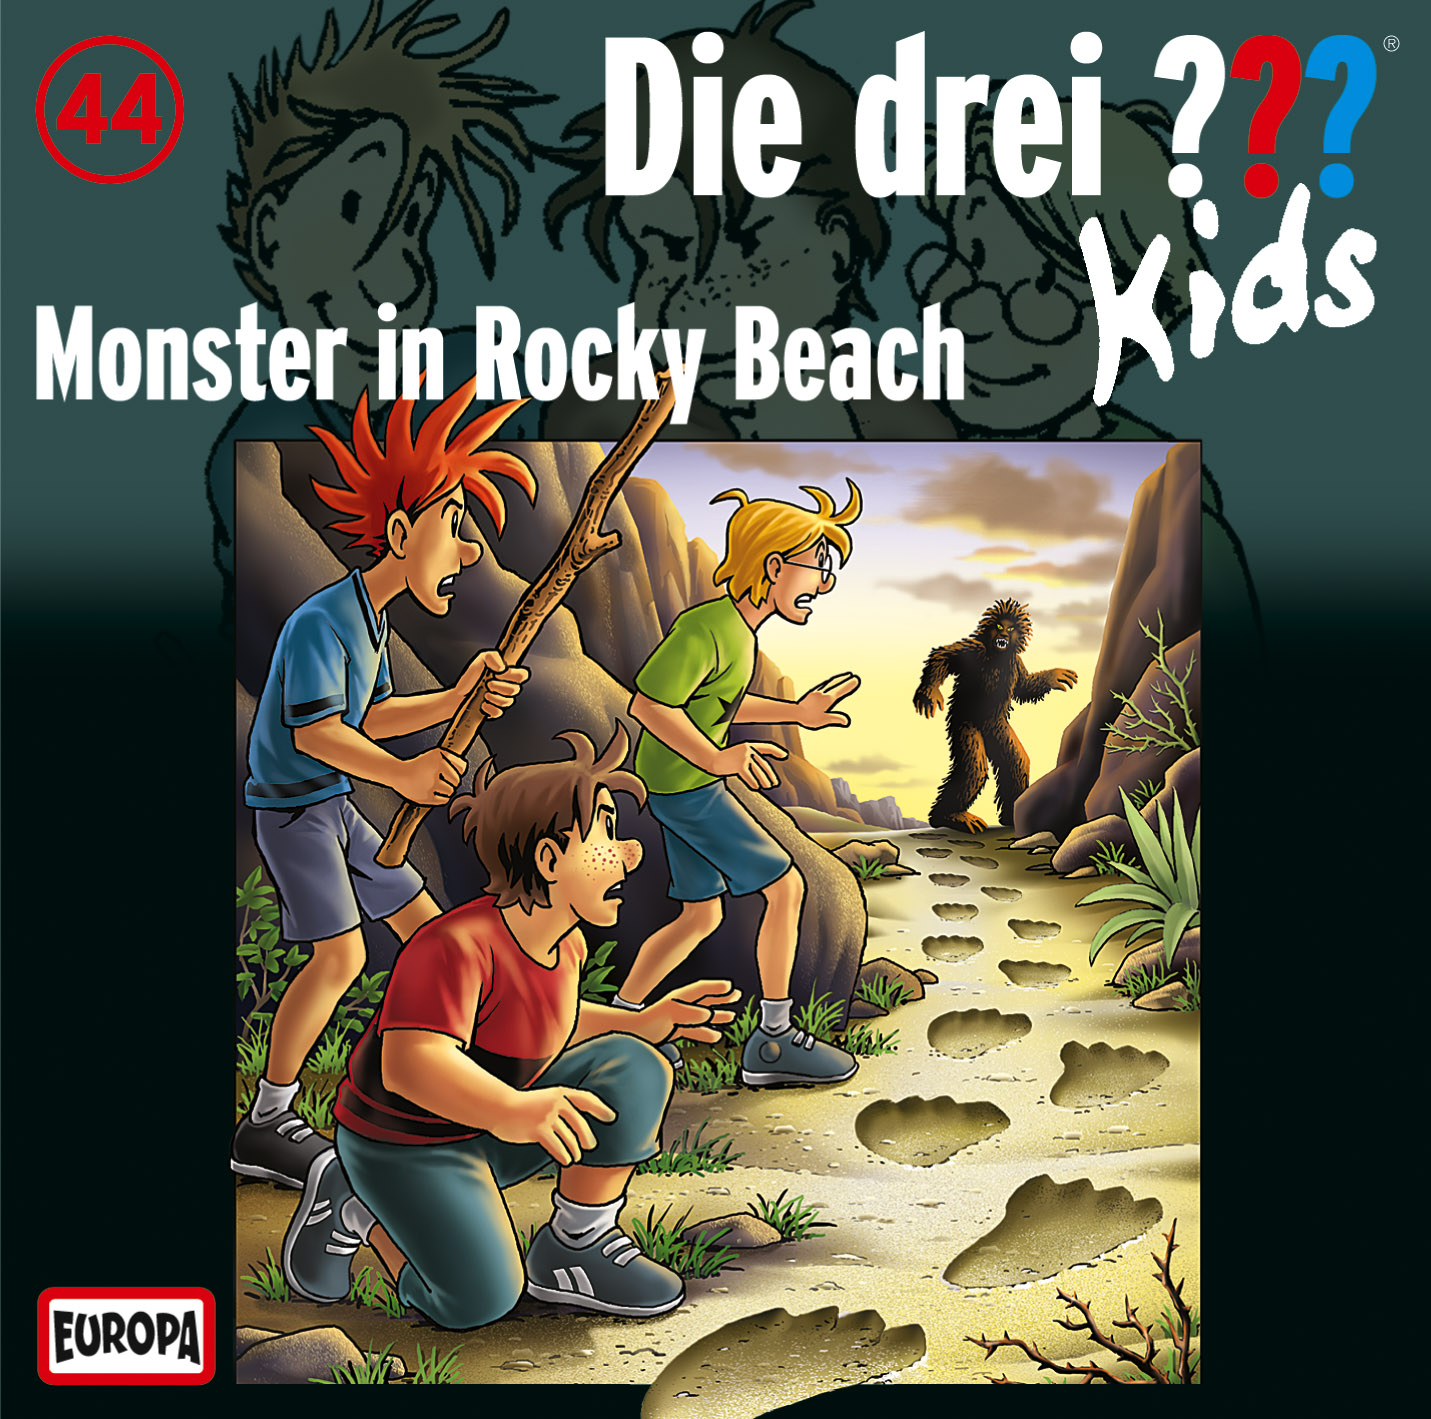 Die drei ??? Kids - Monster in Rocky Beach